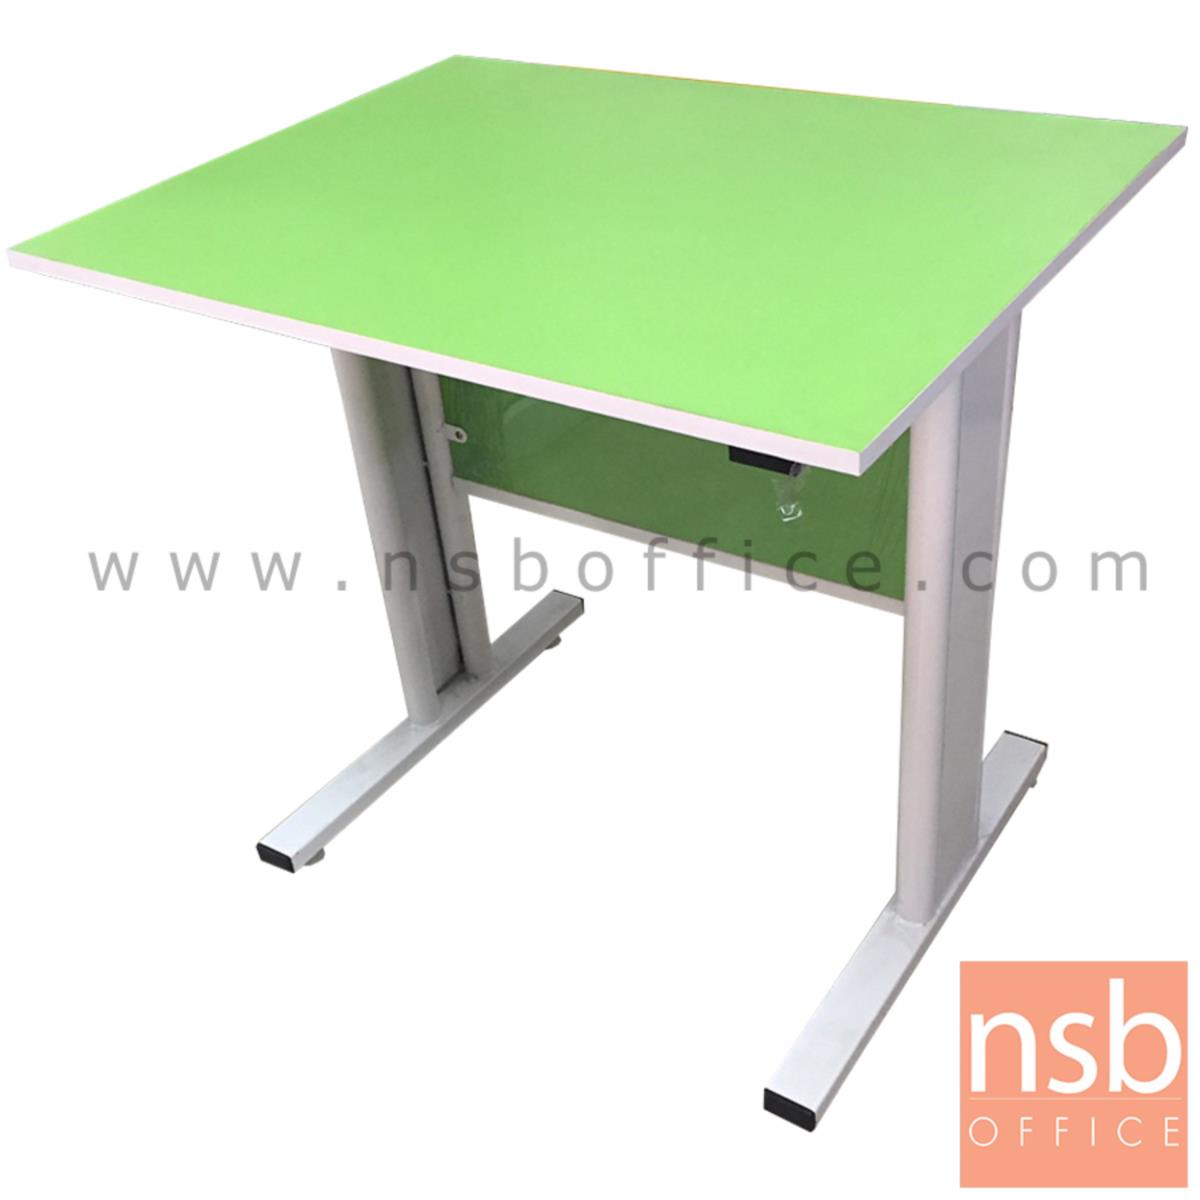 L10A120:โต๊ะทำงาน  ขนาด 80W*74H cm. ขาเหล็ก สีเขียว-ขาว